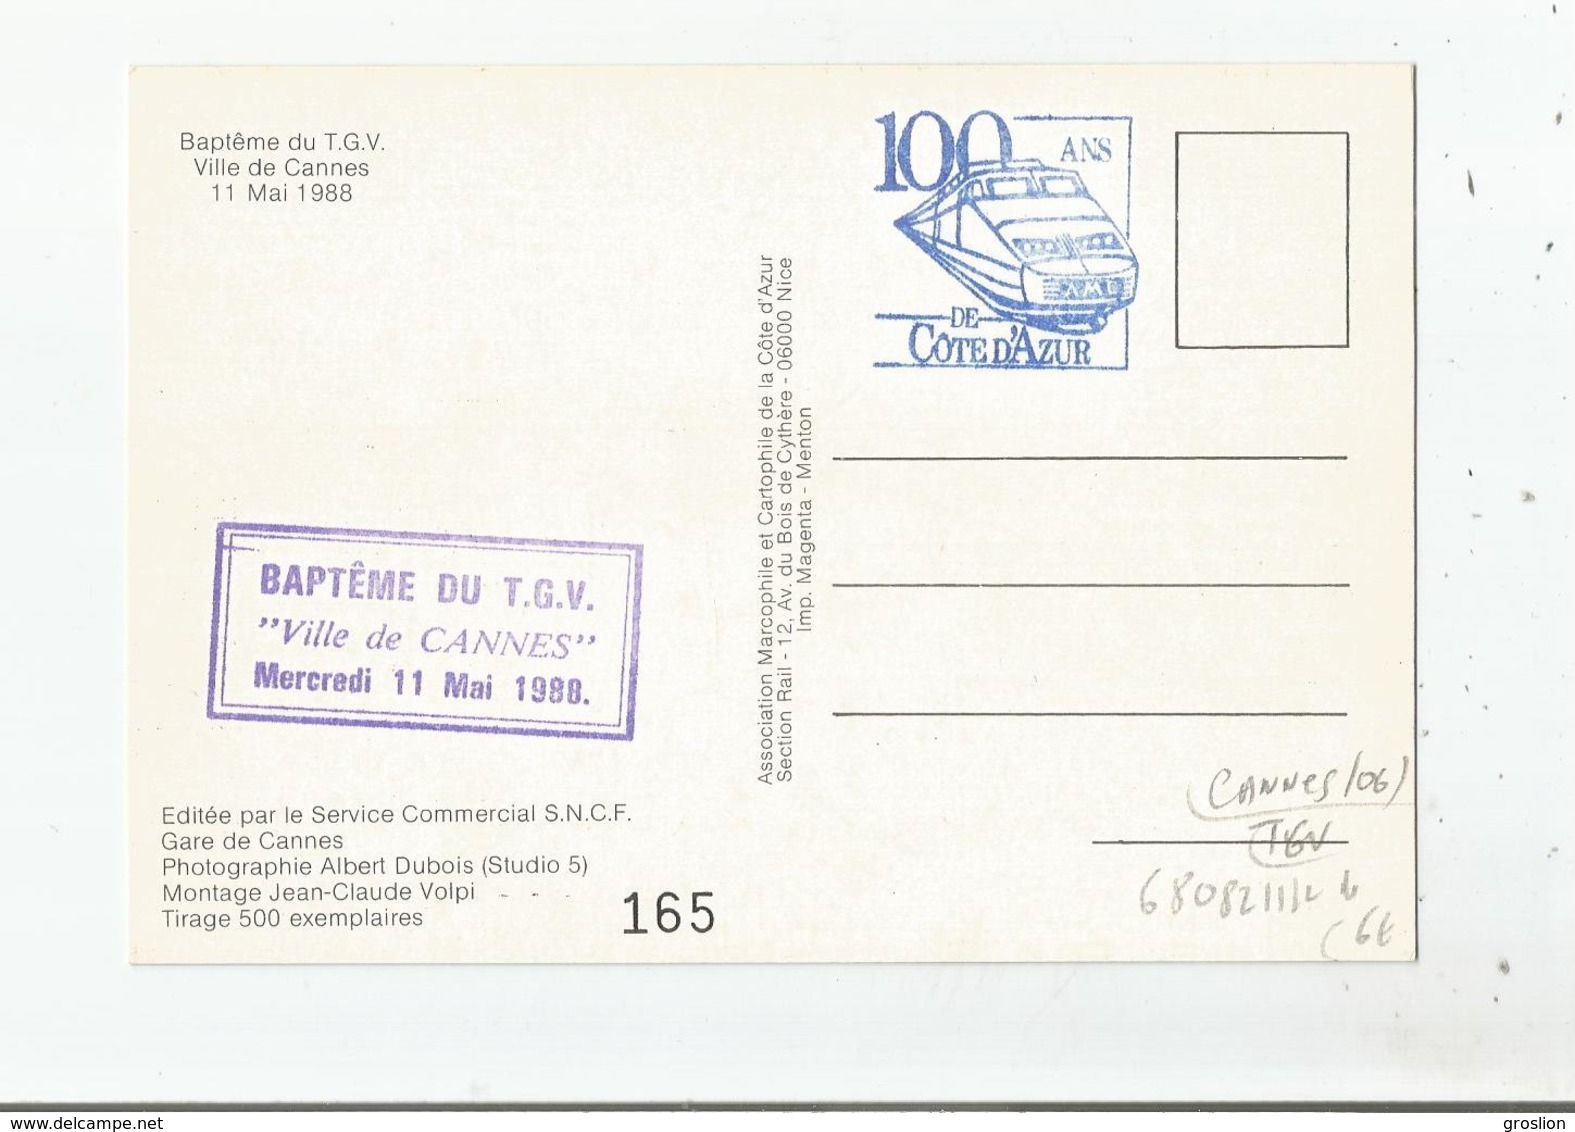 BAPTEME DU TGV VILLE DE CANNES 11 MAI 1988 - Cannes